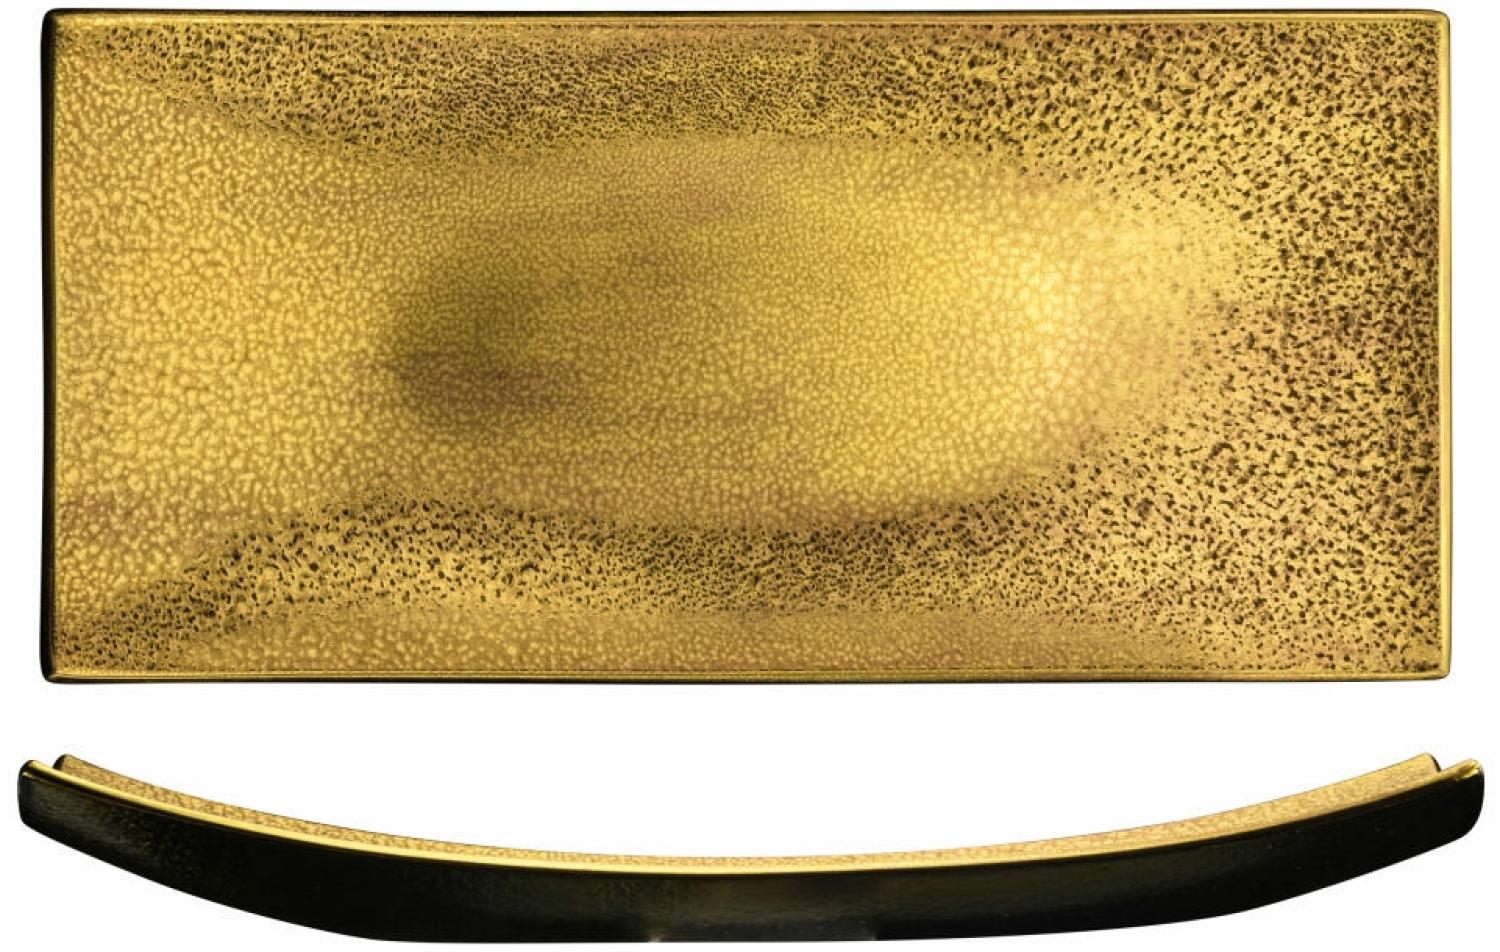 Eisch Platte Gold Rush, Servierplatte, Servierteller, Kristallglas, Gold, 39 x 18 cm, 74330739 Bild 1